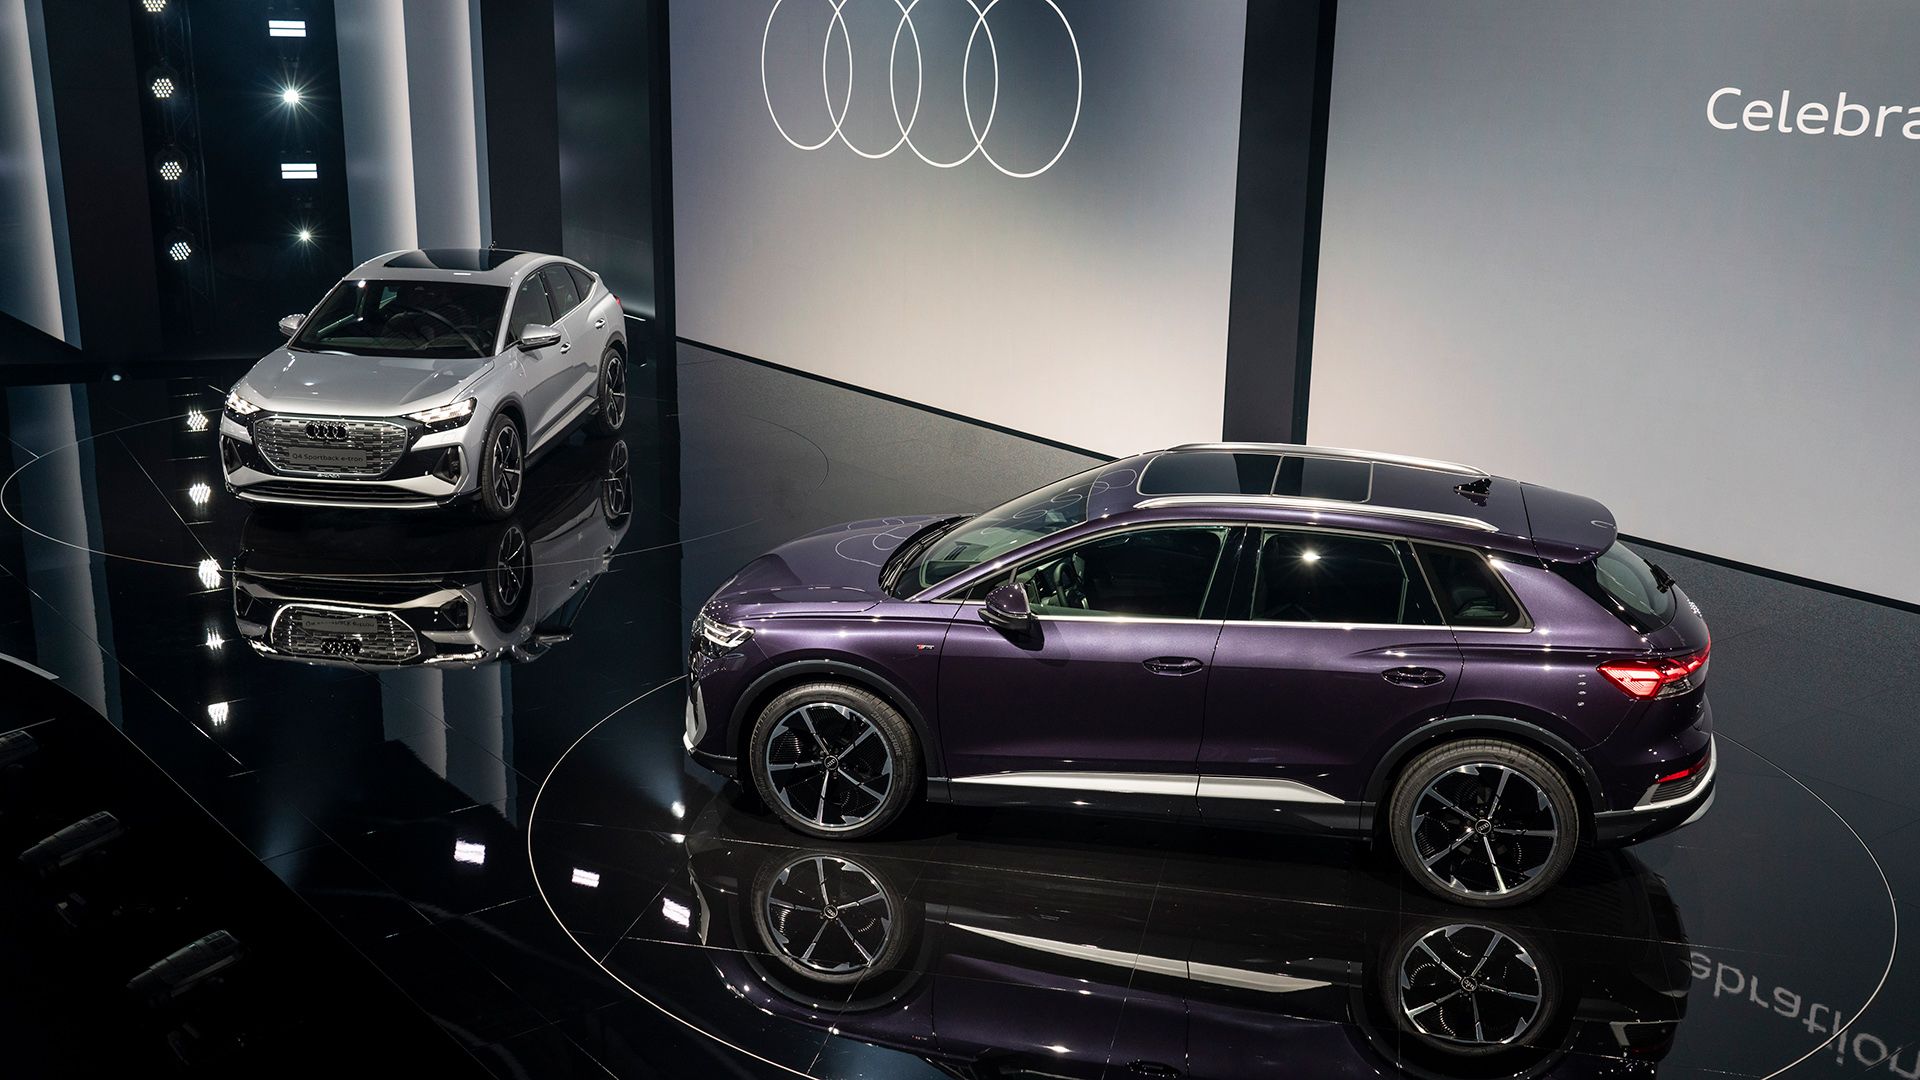 En la imagen se ven dos modelos de Audi Q4 e-tron sobre el escenario, uno plateado y el otro morado.